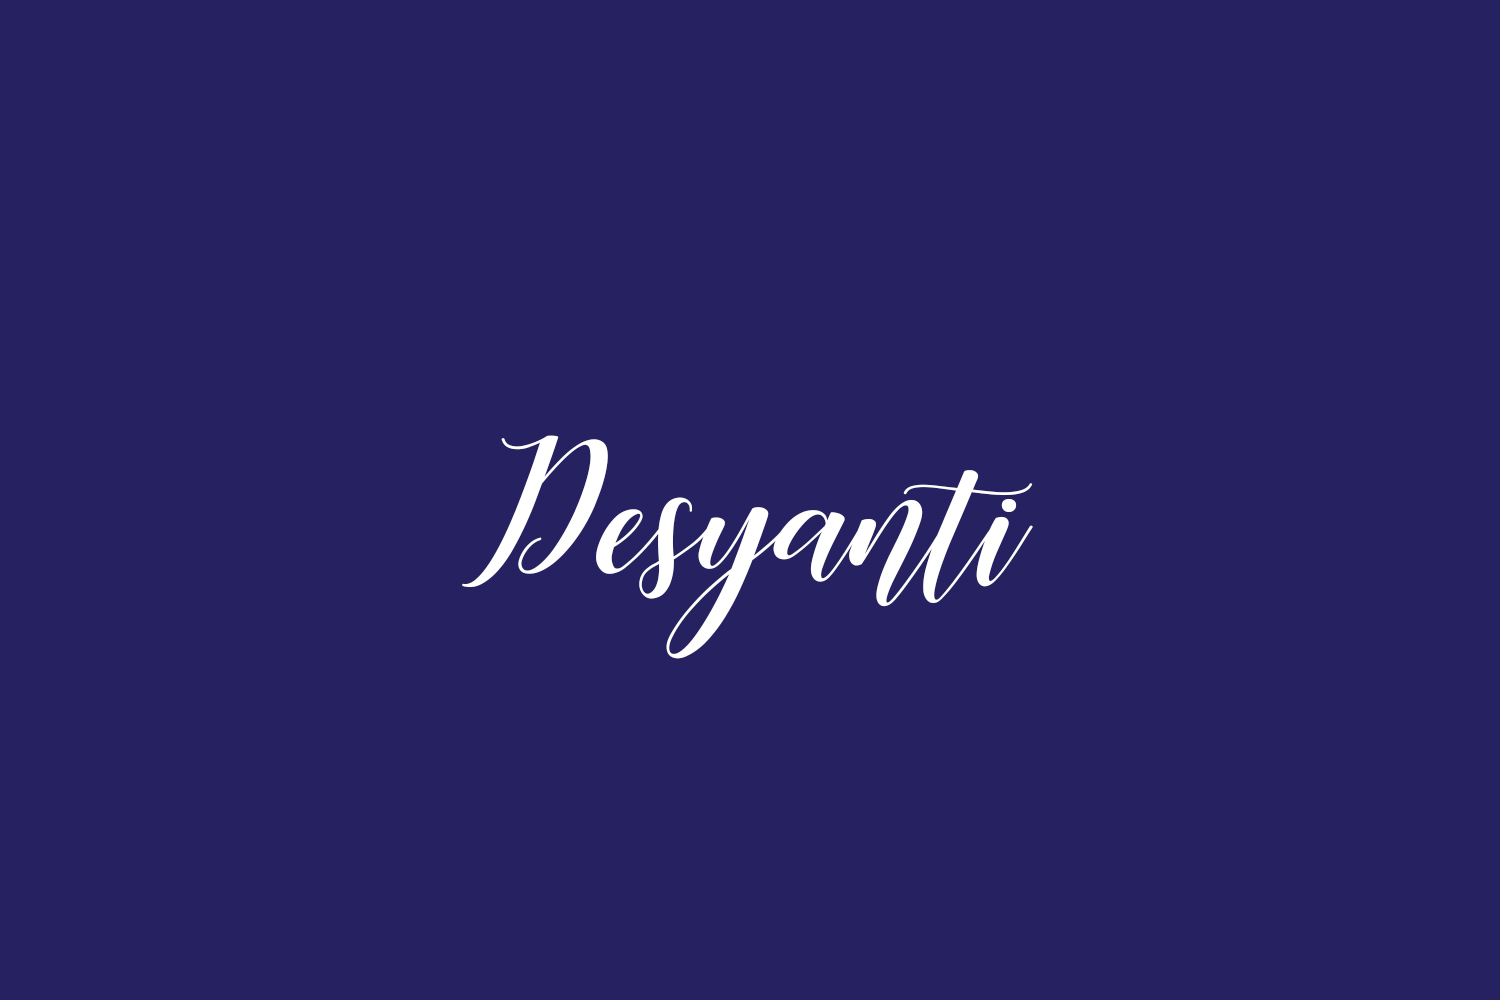 Desyanti Free Font